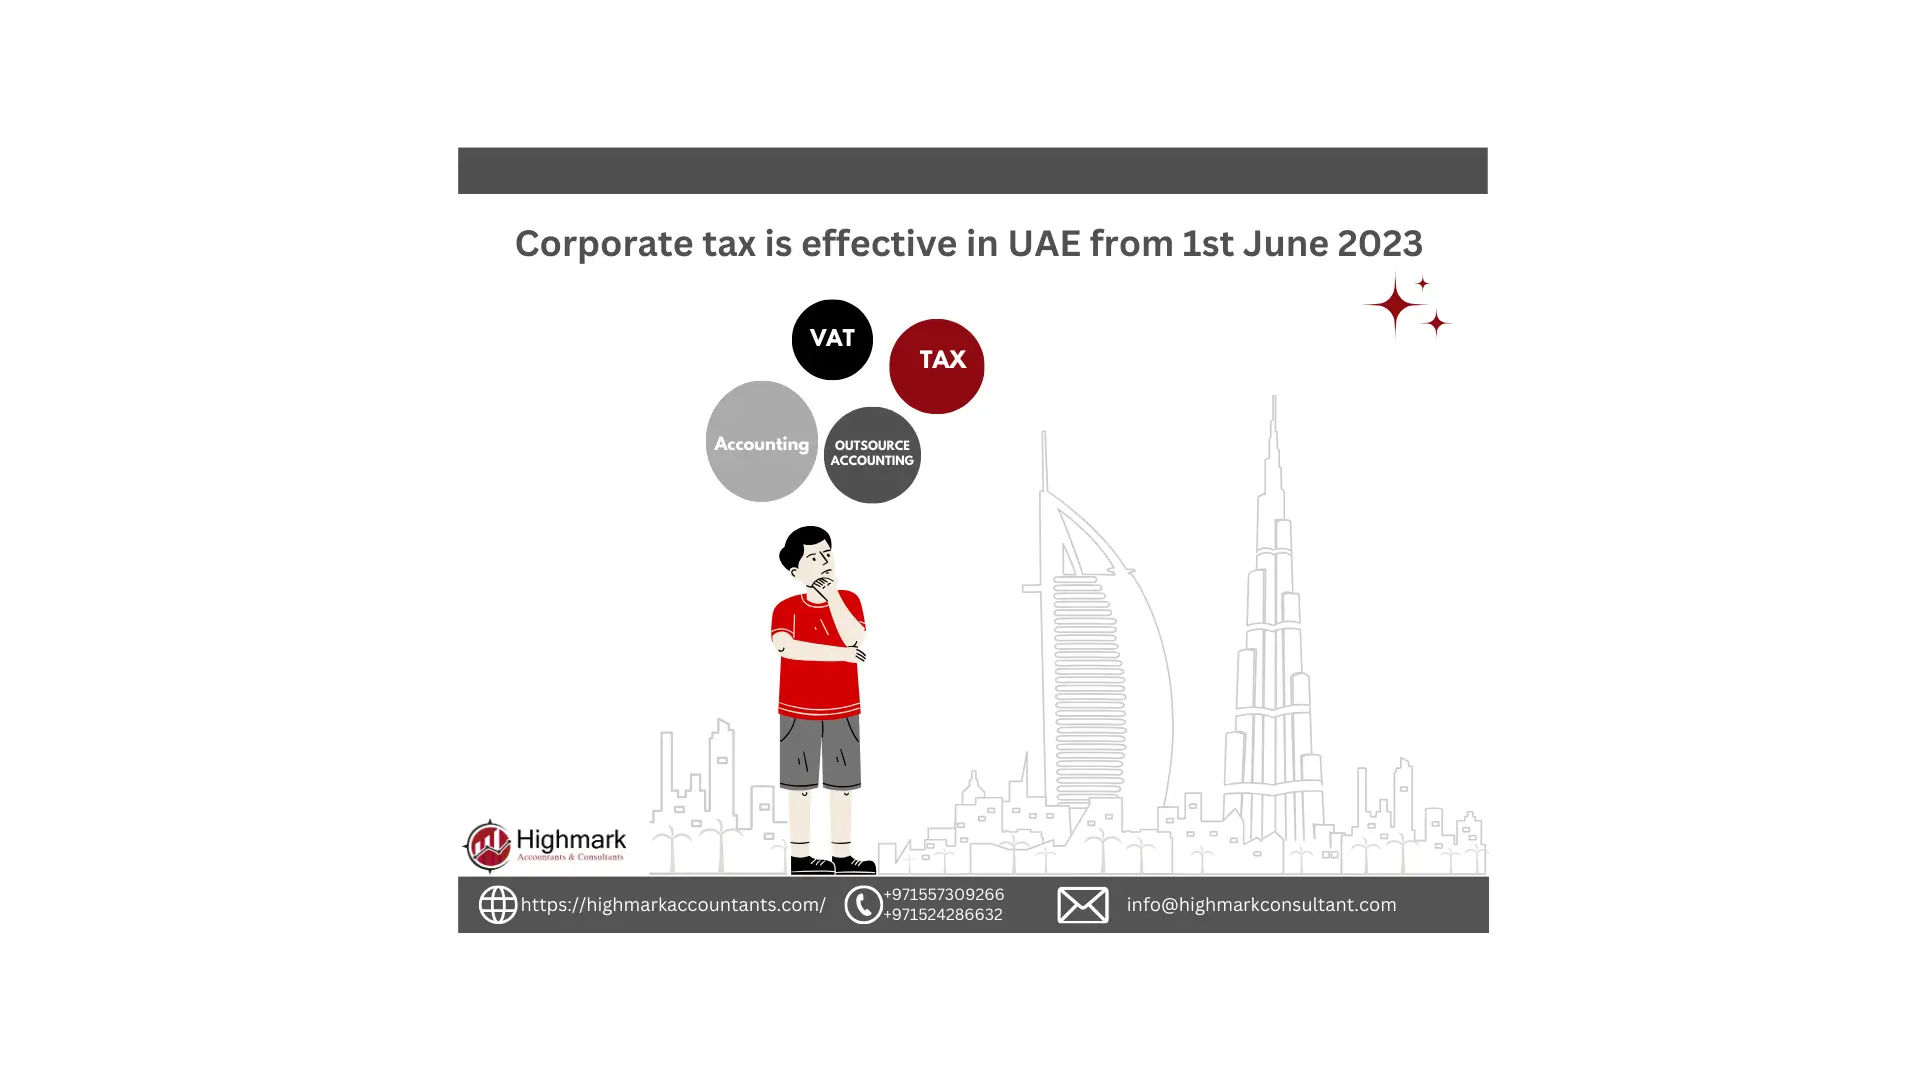 Corporate Tax Effecive in UAE from 1st June 2023